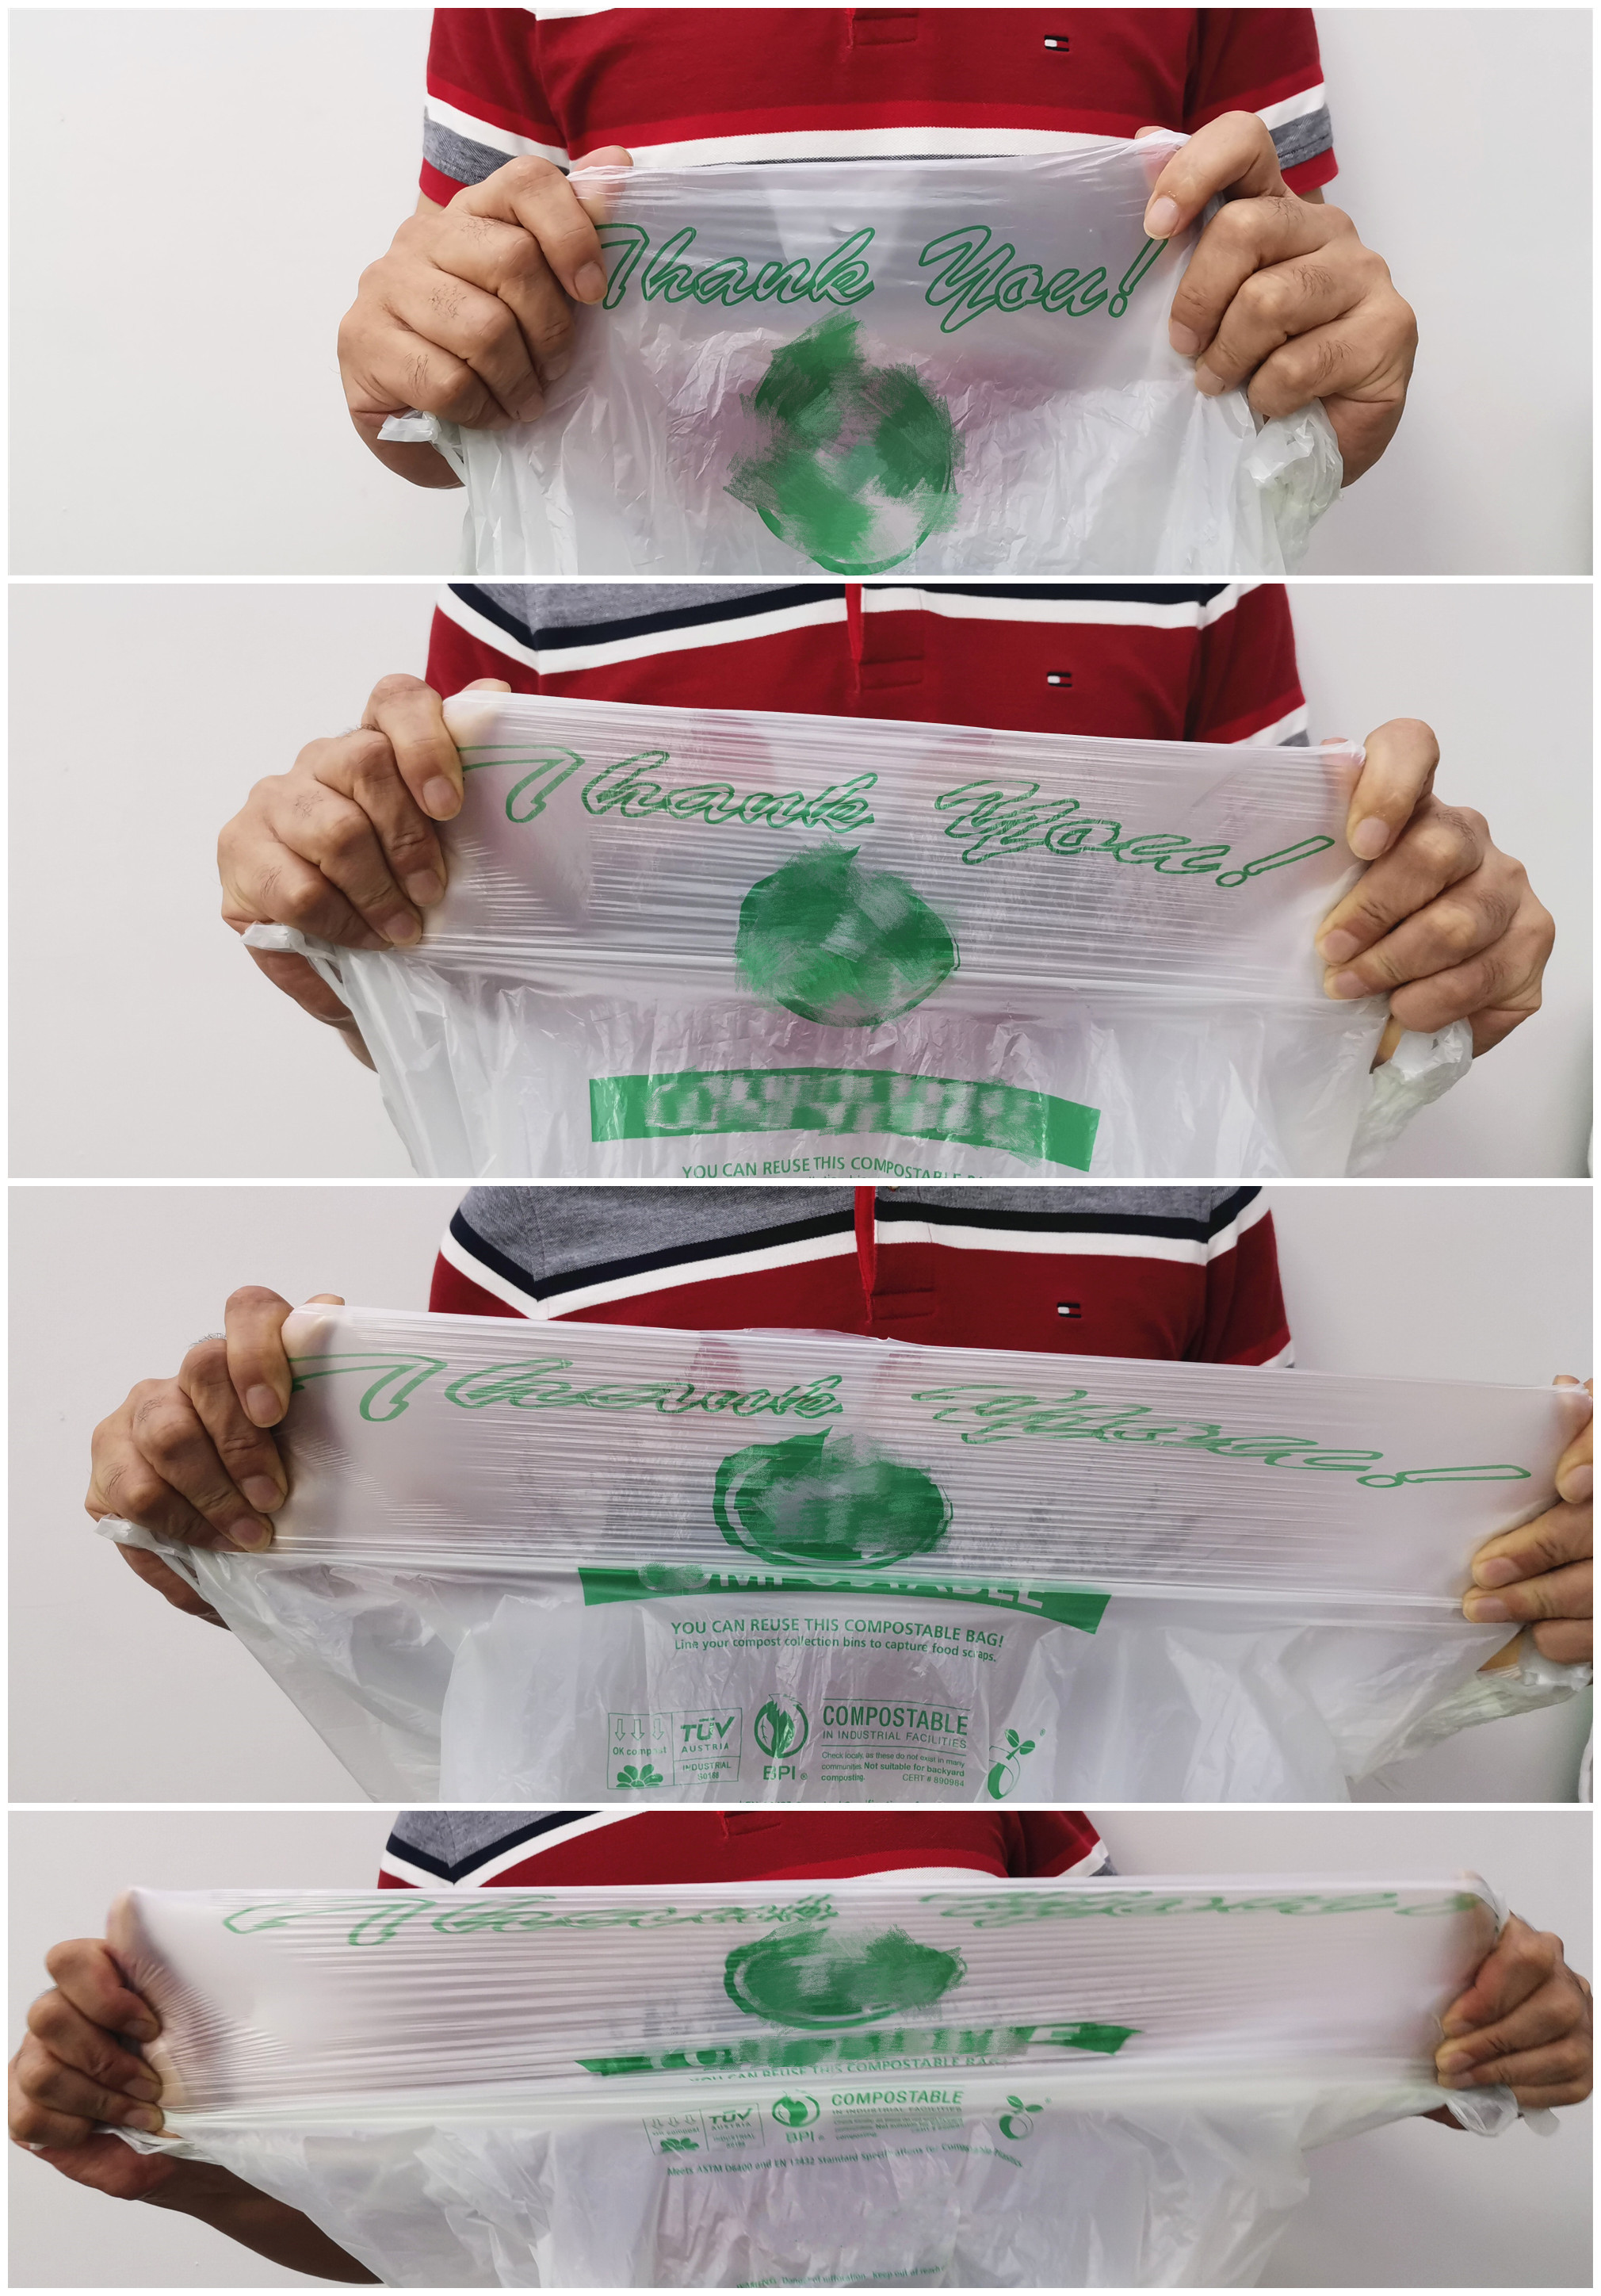 100% Biodegradable Plastic Bags